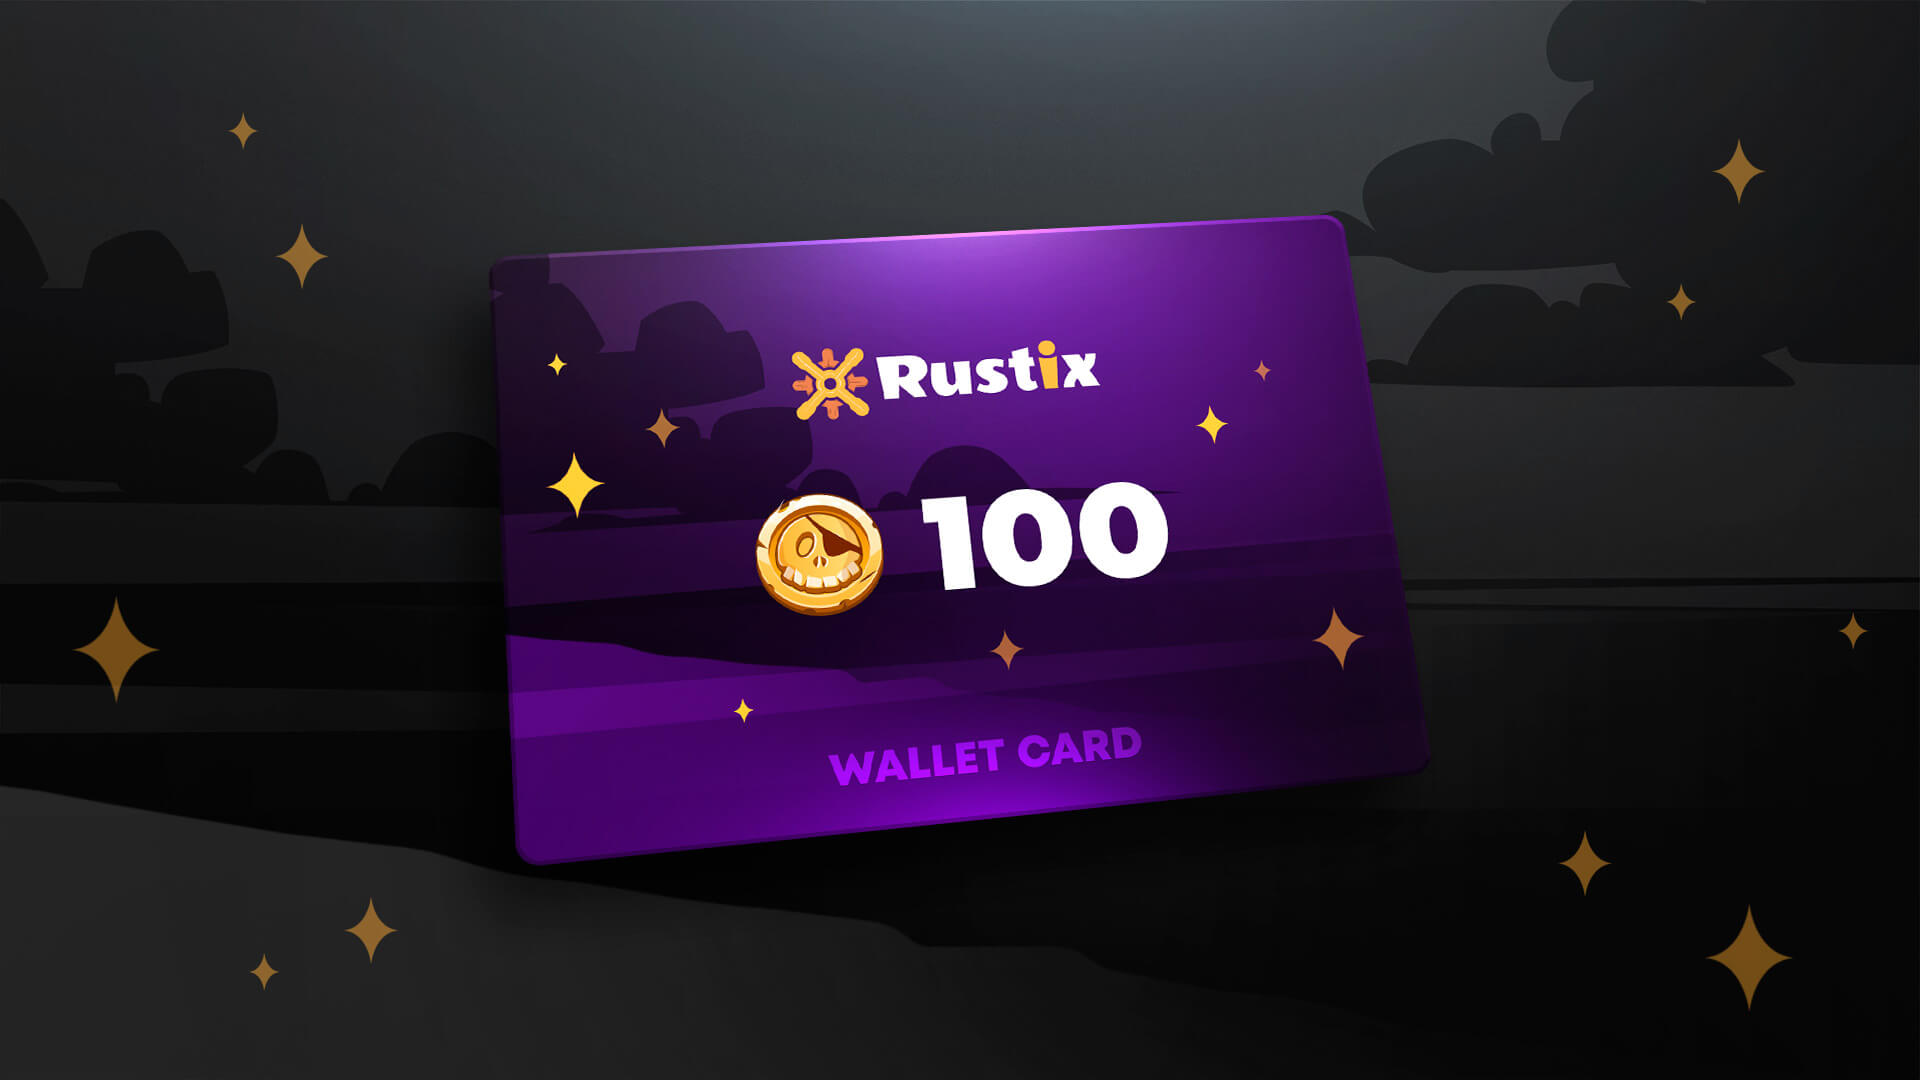 Rustix.io 100 USD Wallet Card Code, 113$